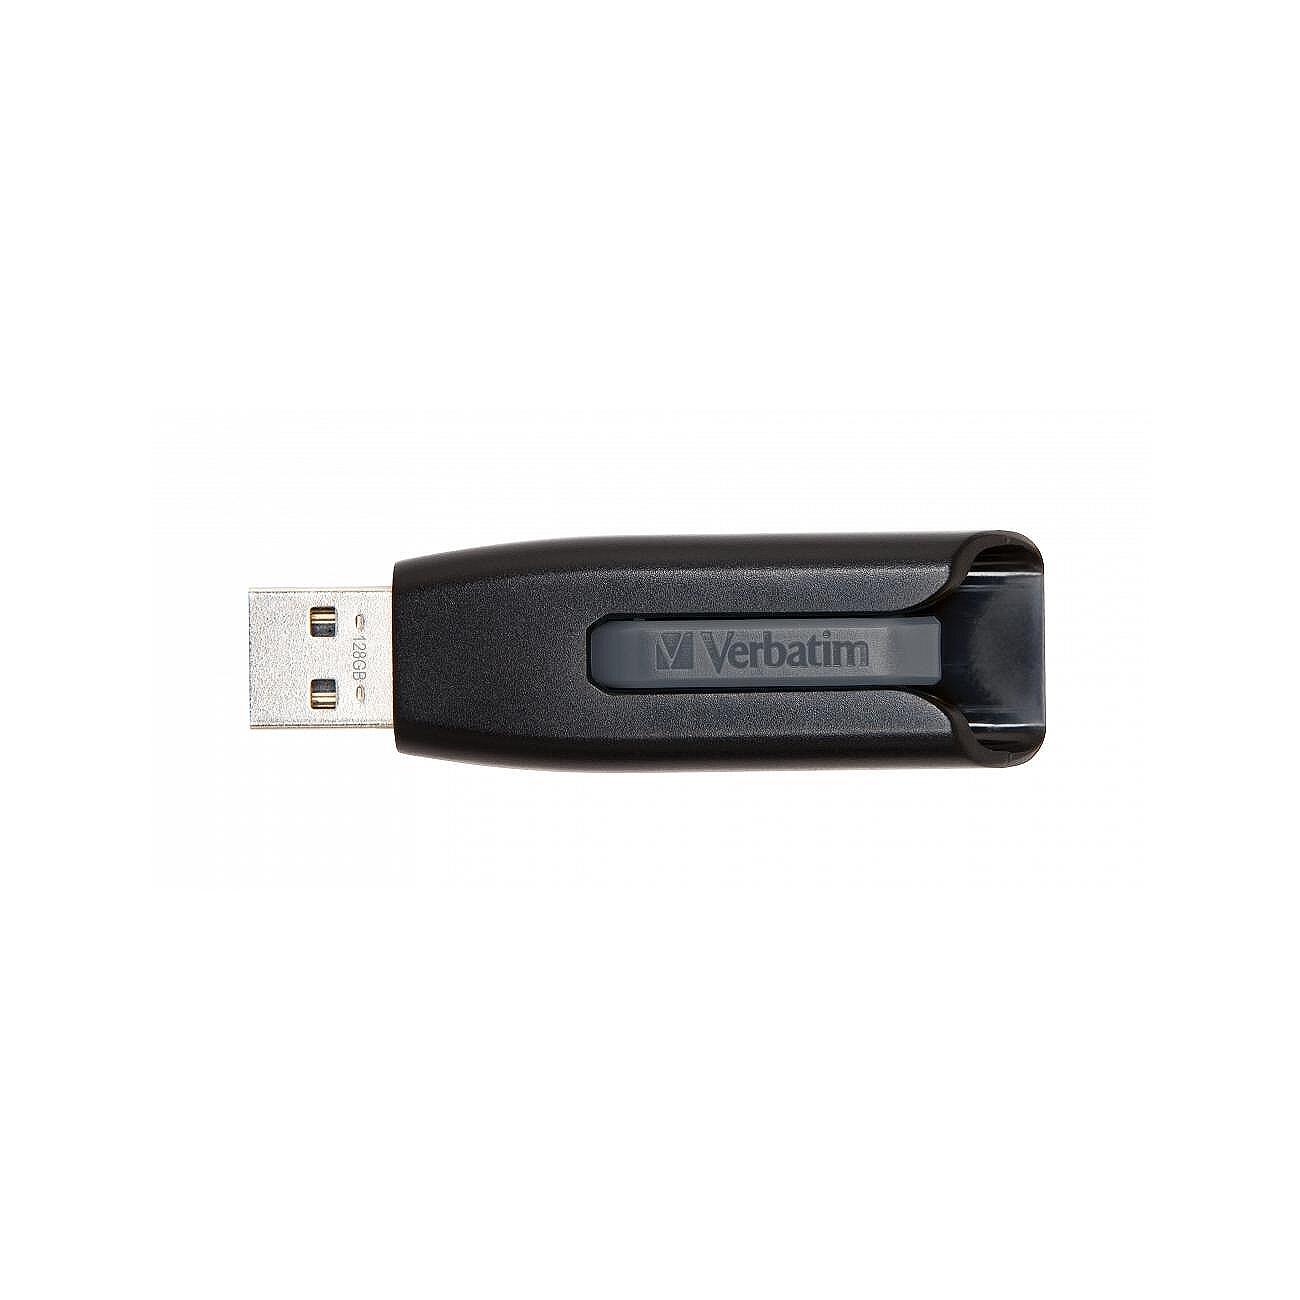 Памет USB Verbatim V3 128GB USB 3.0 Изображение